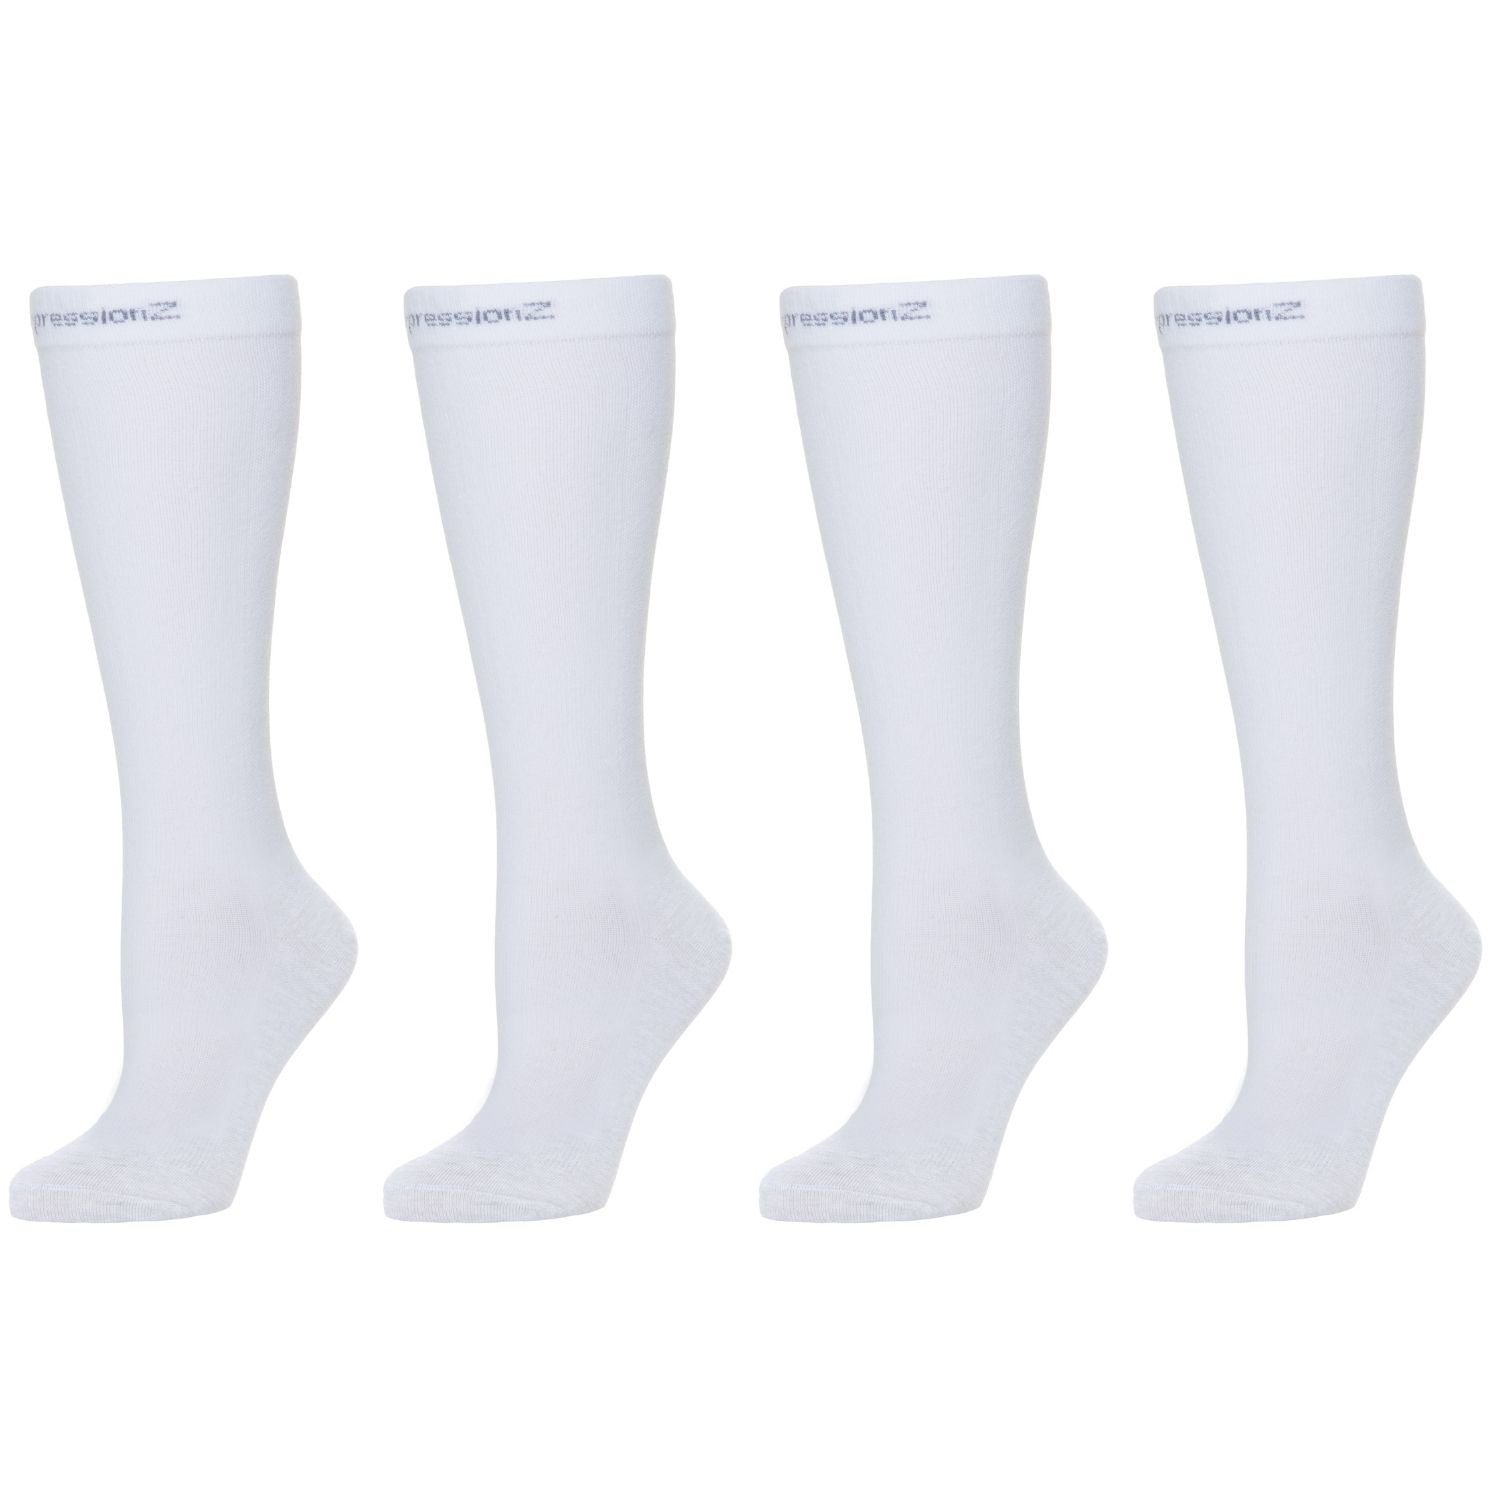 Compression Socks (20-30 mmHg) - White 2 Pack